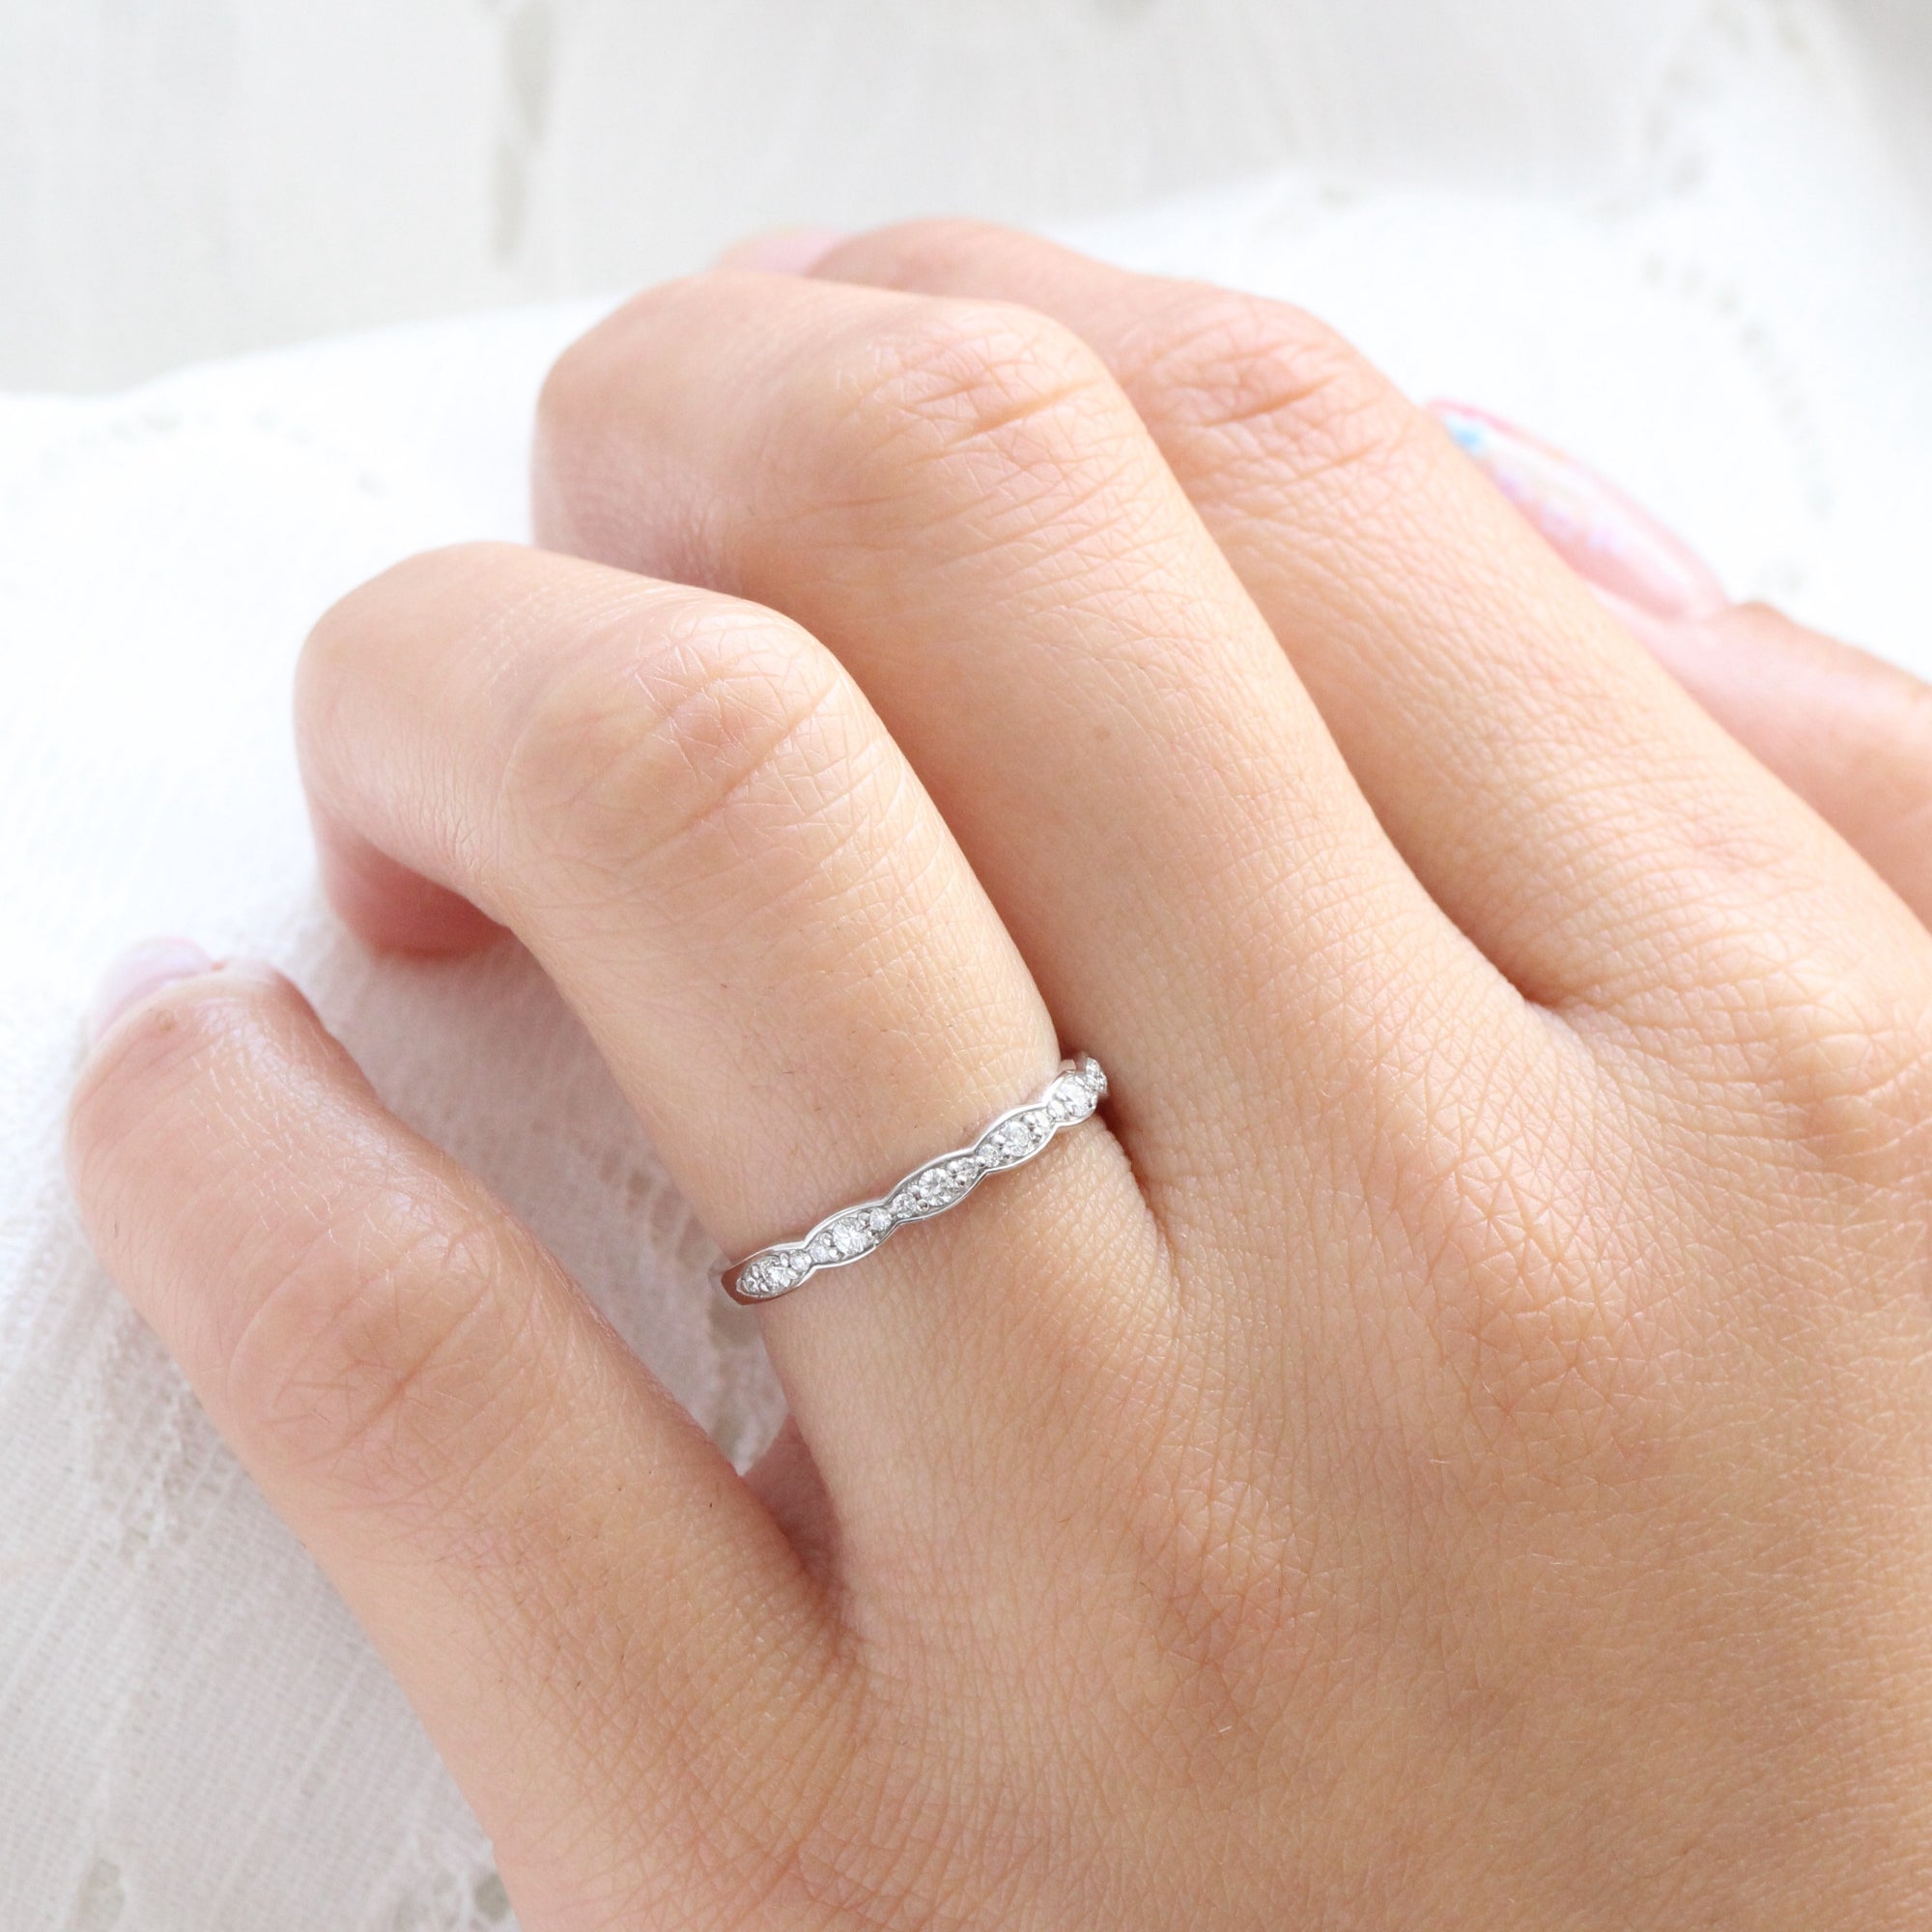 Half diamond wedding ring white gold scalloped band la more design jewelry